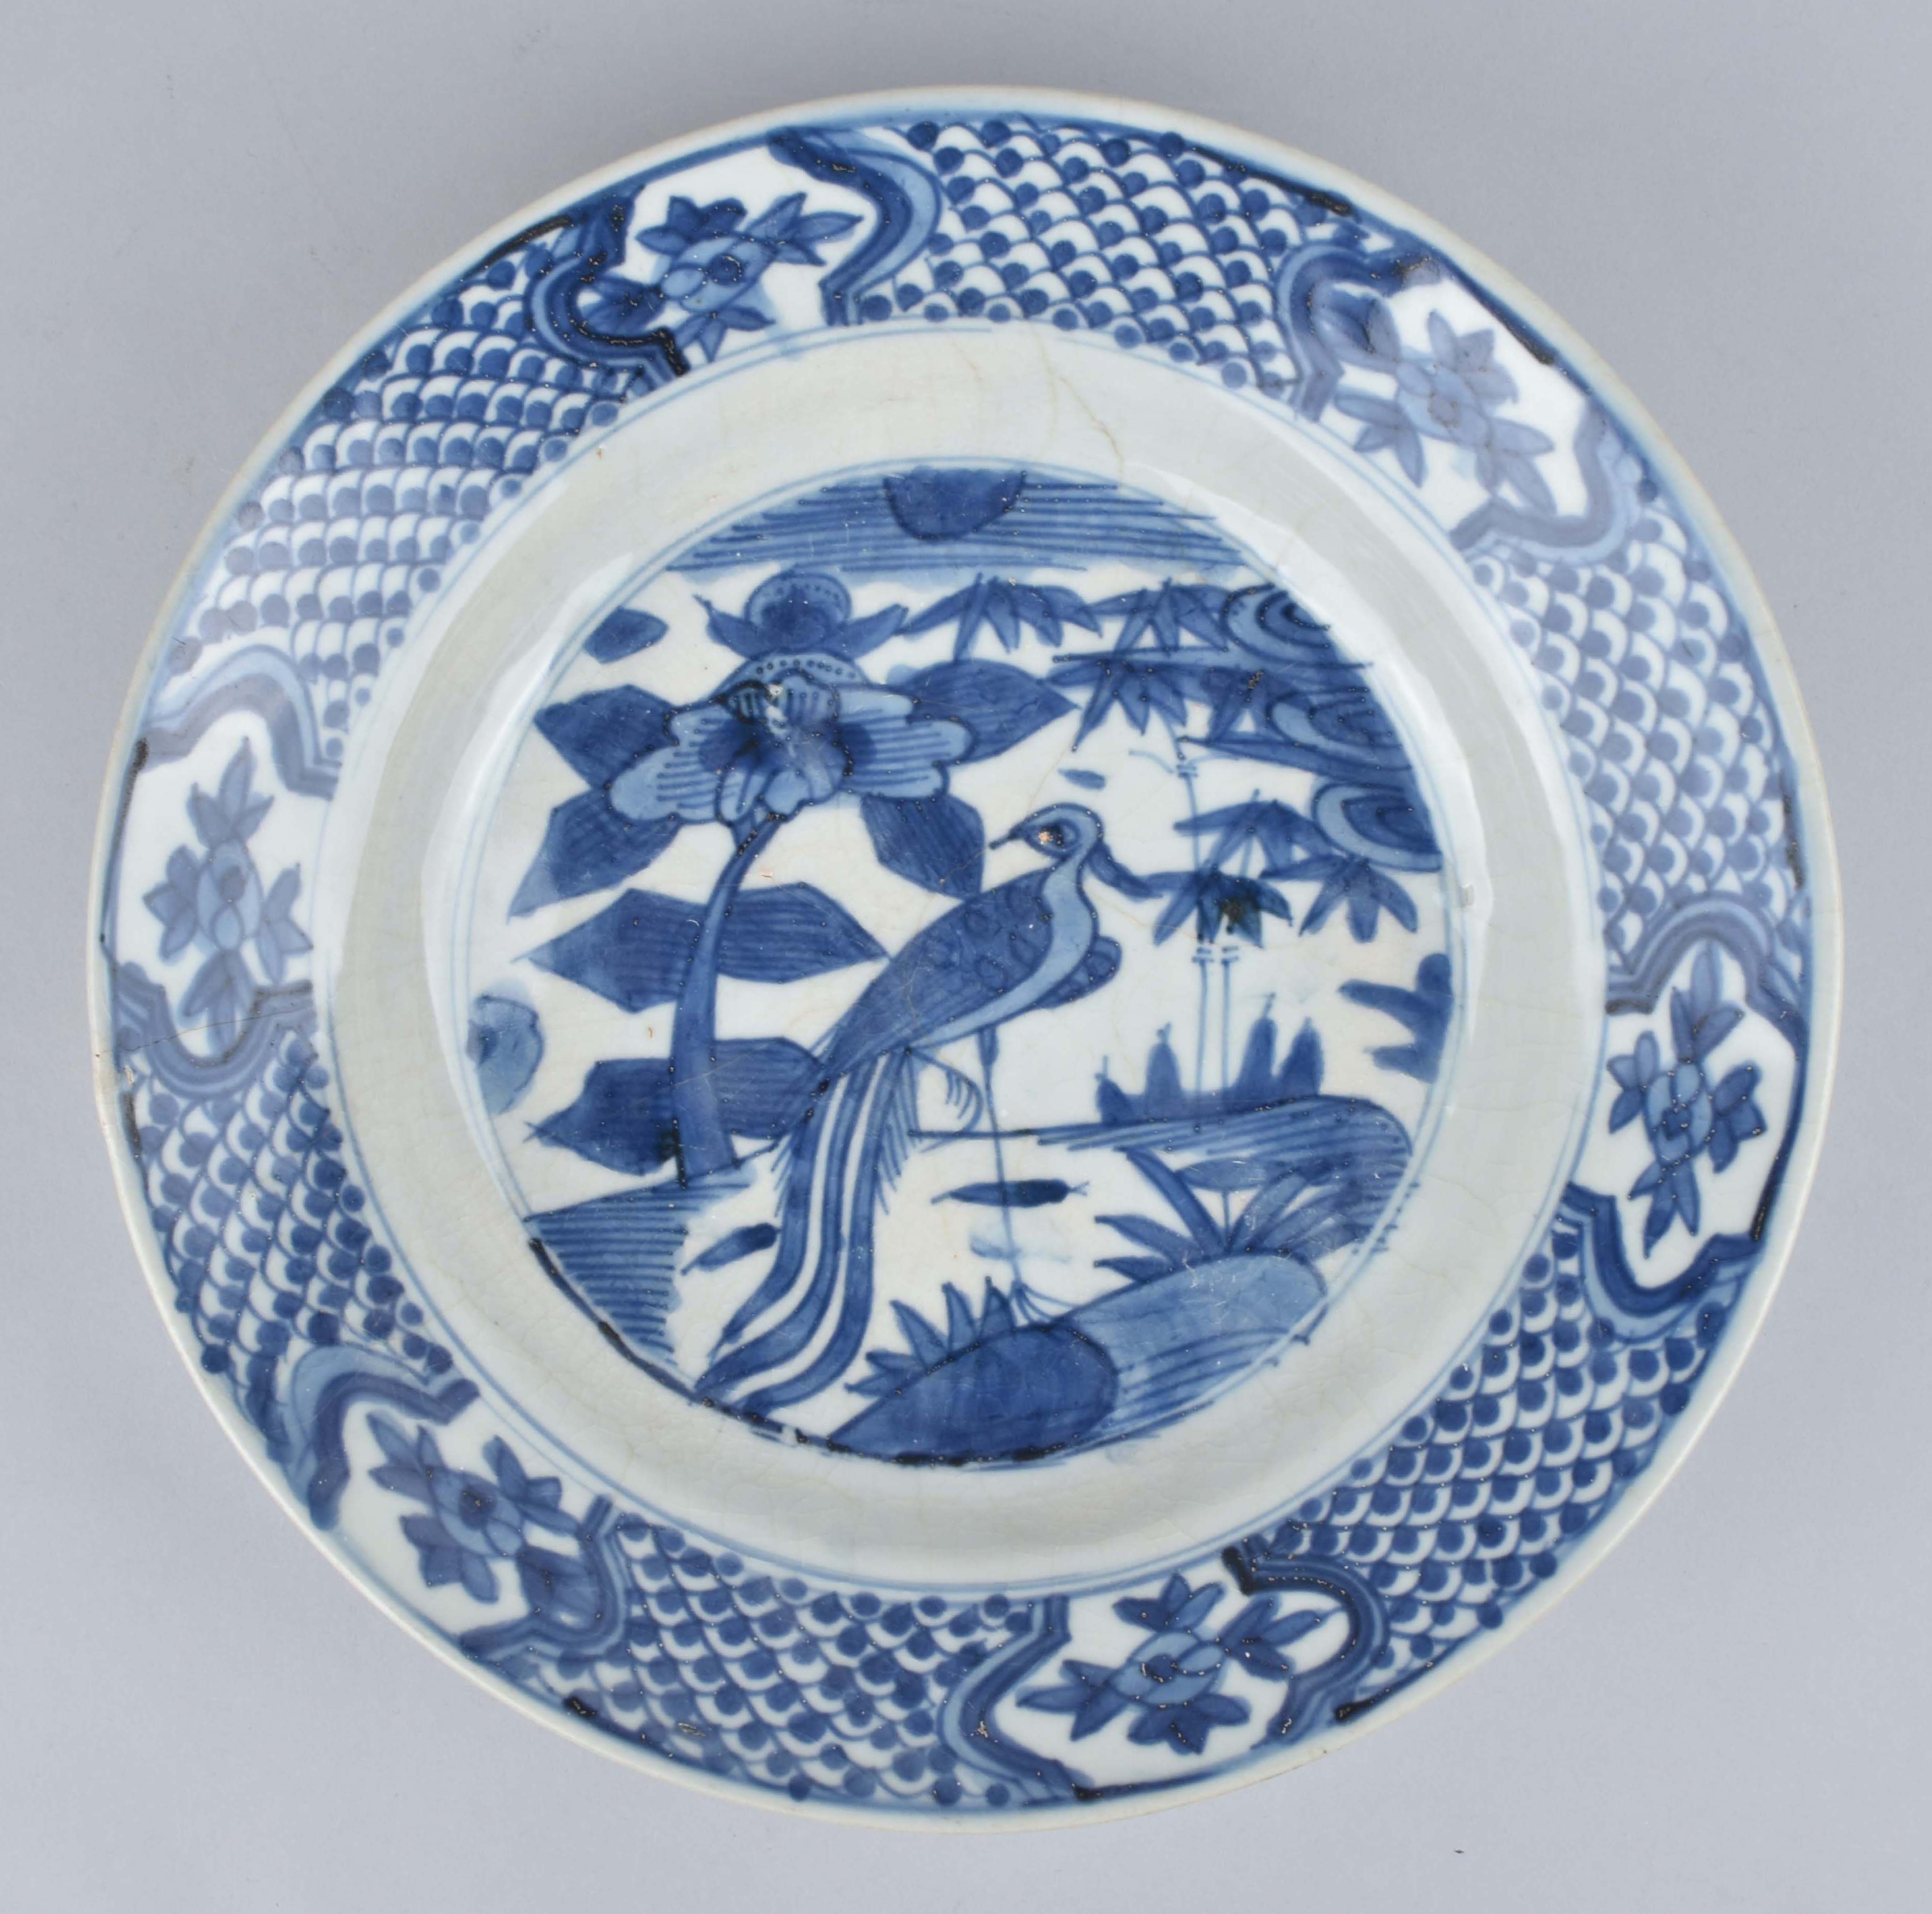 Porcelaine Ming dynasty (1368–1644), ca. 1600, China, Zhangzou, Fujian